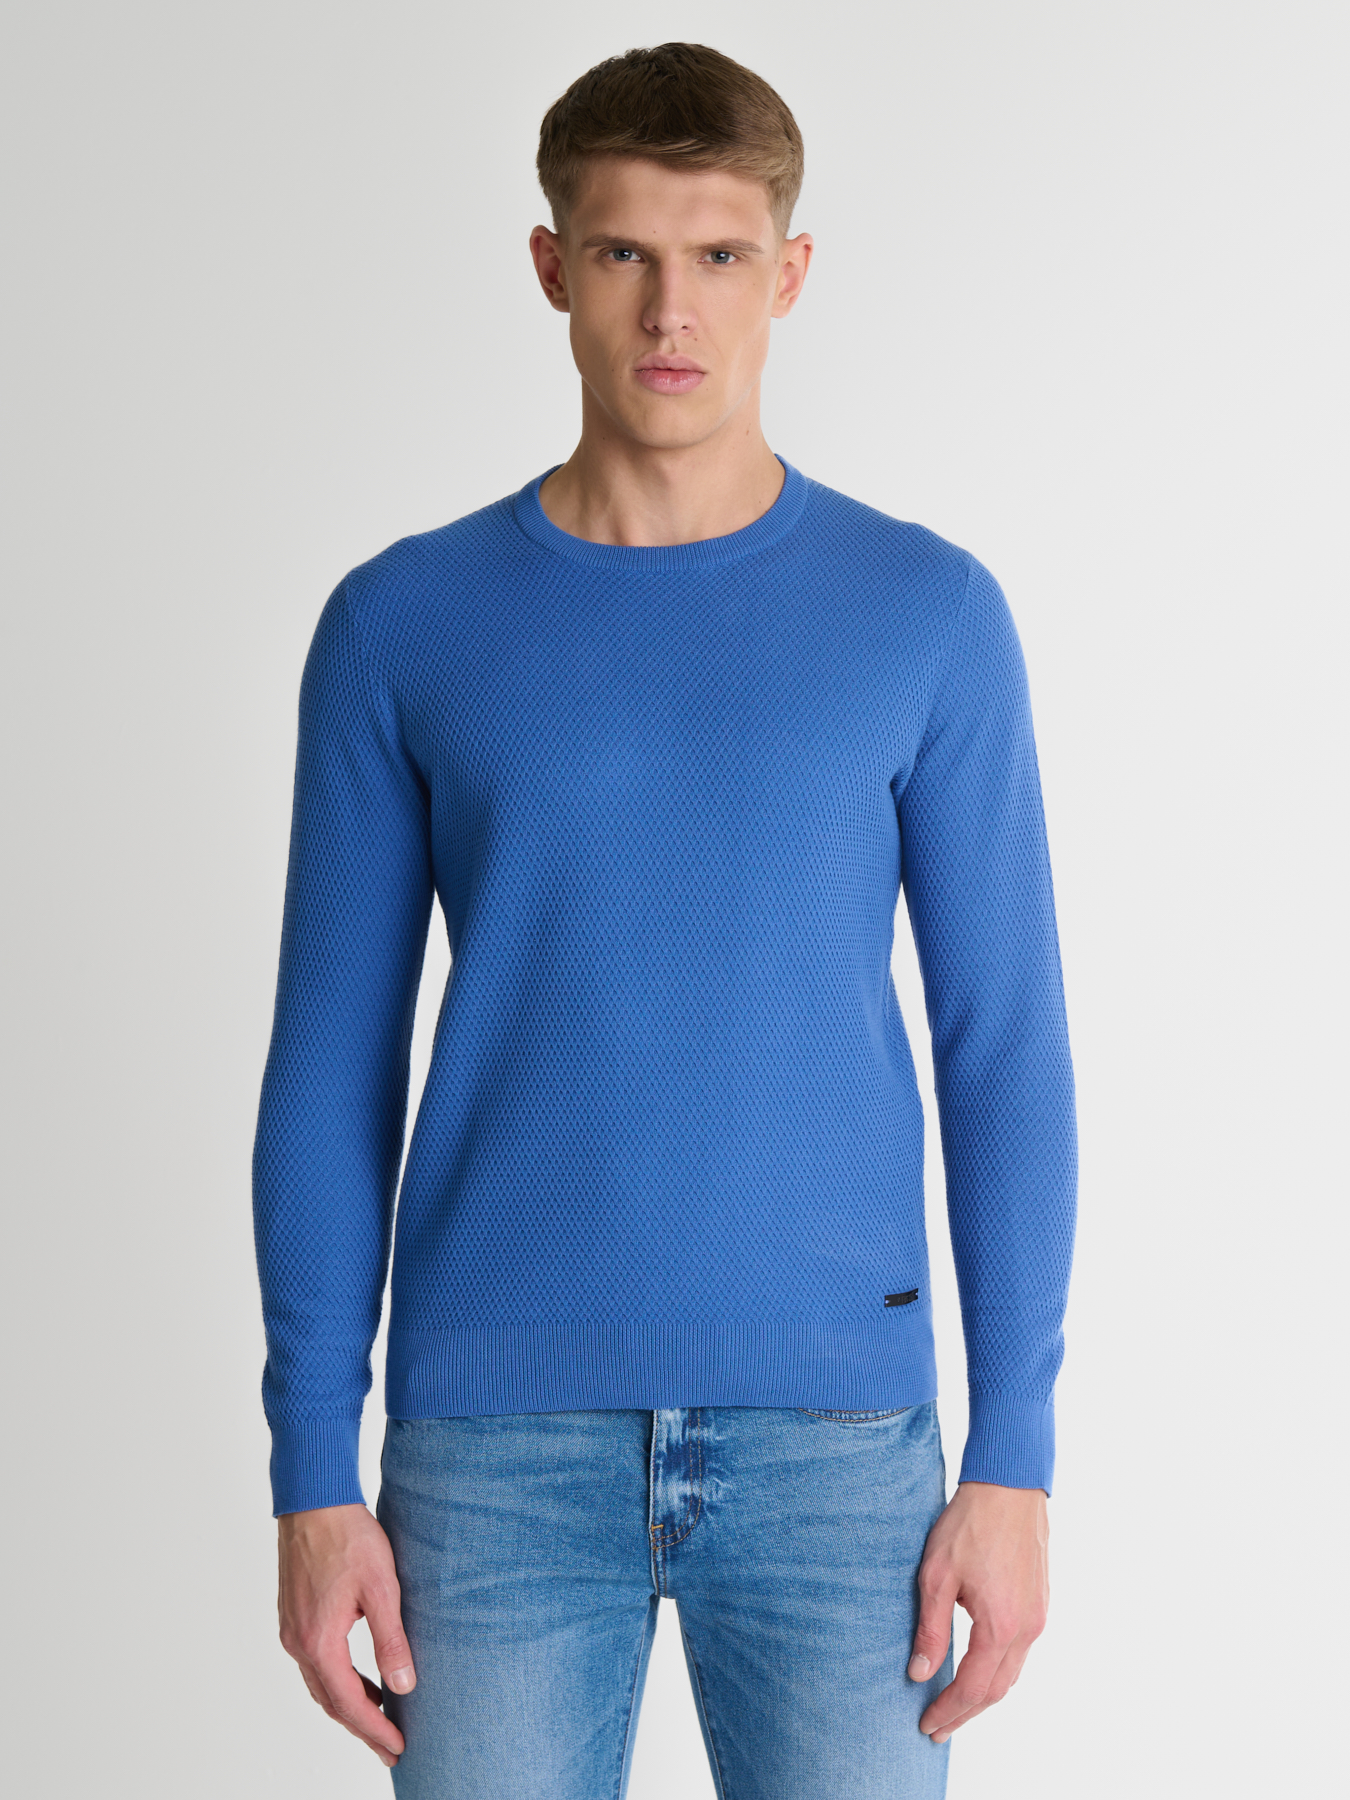 Big Star Man's Sweater 161037  Wool-401